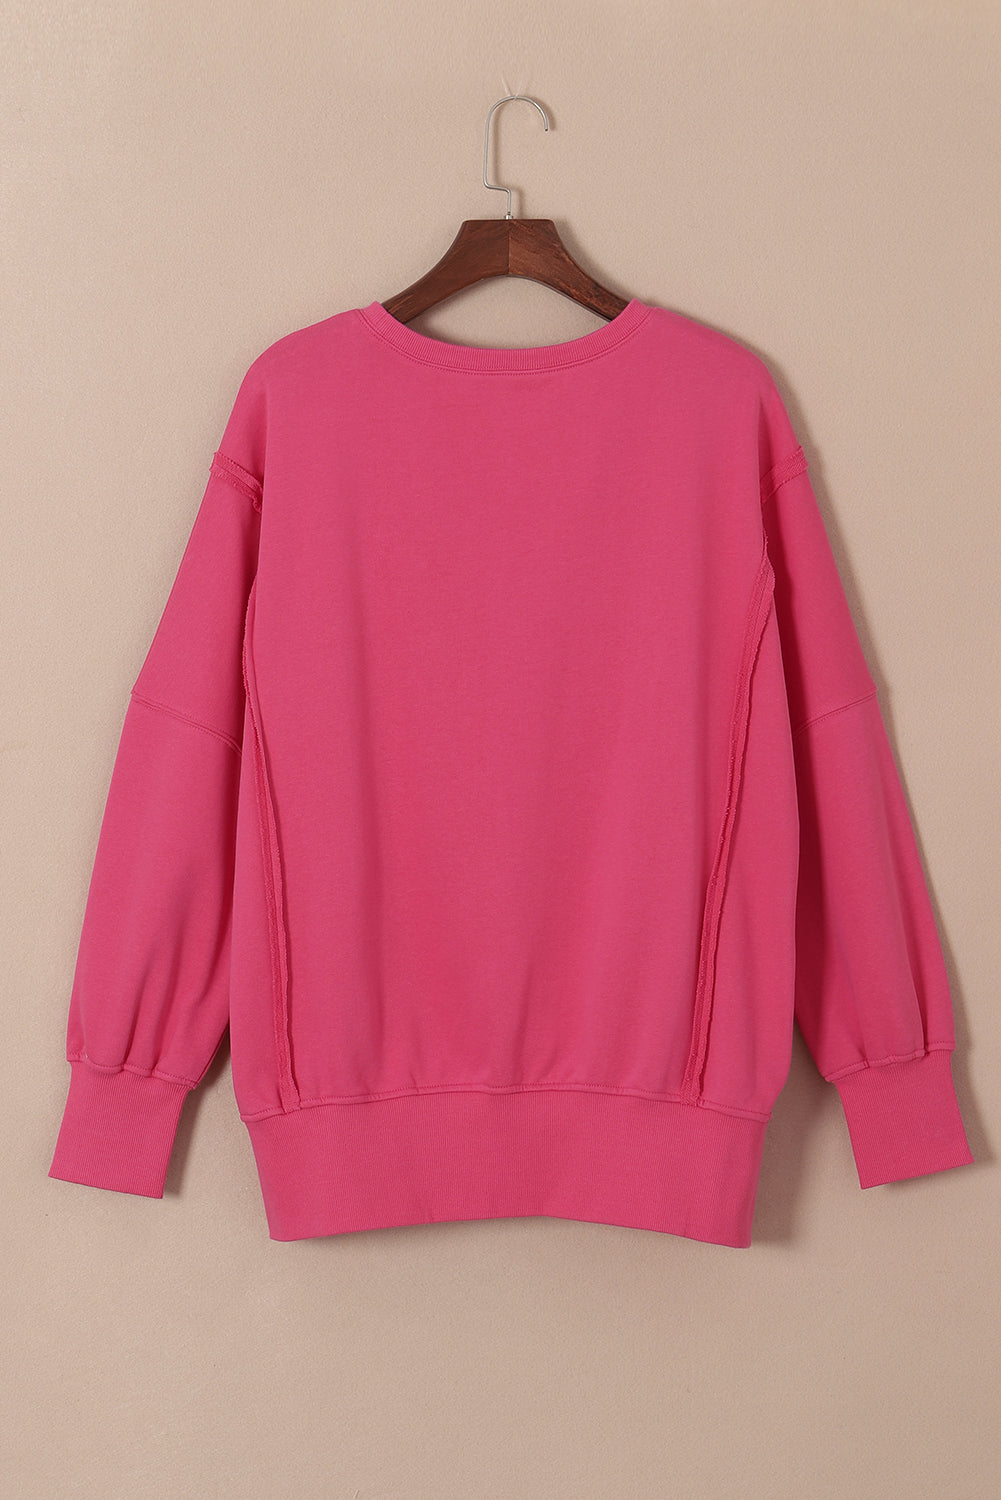 Sweat-shirt rose à coutures apparentes, épaules tombantes, fente, ourlet haut et bas